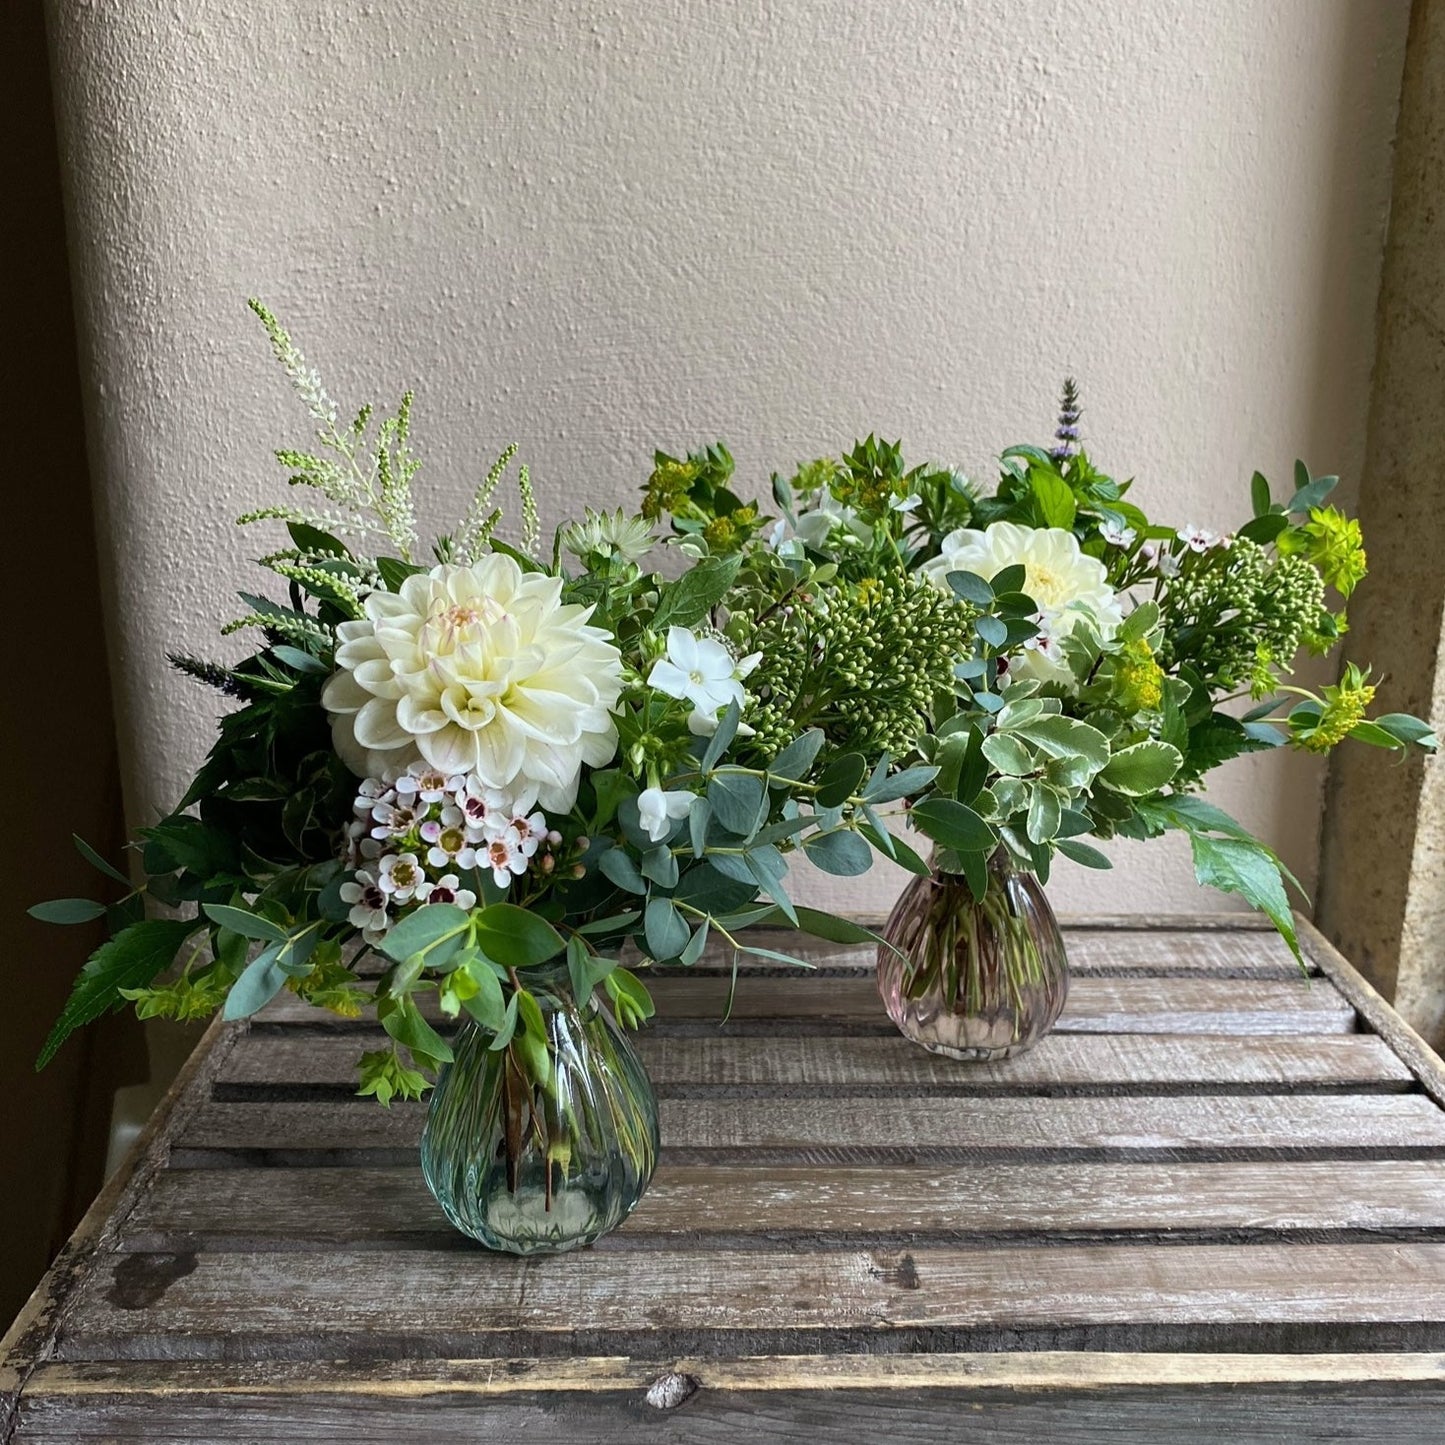 A Pair of Pretty Bud Vases - including posies of seasonal flowersj